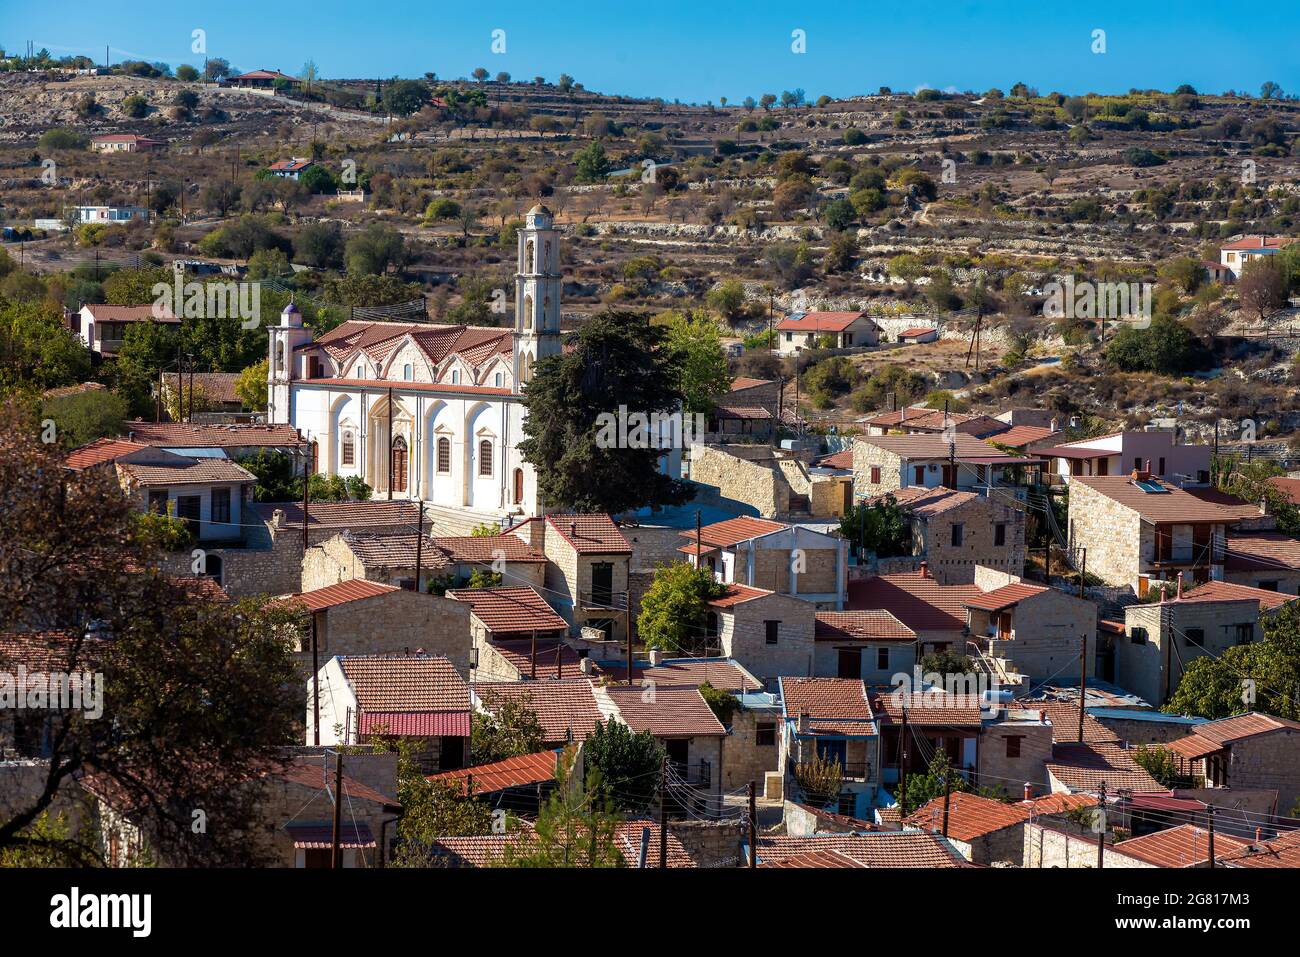 View of Lofou village. Limassol District, Cyprus Stock Photo